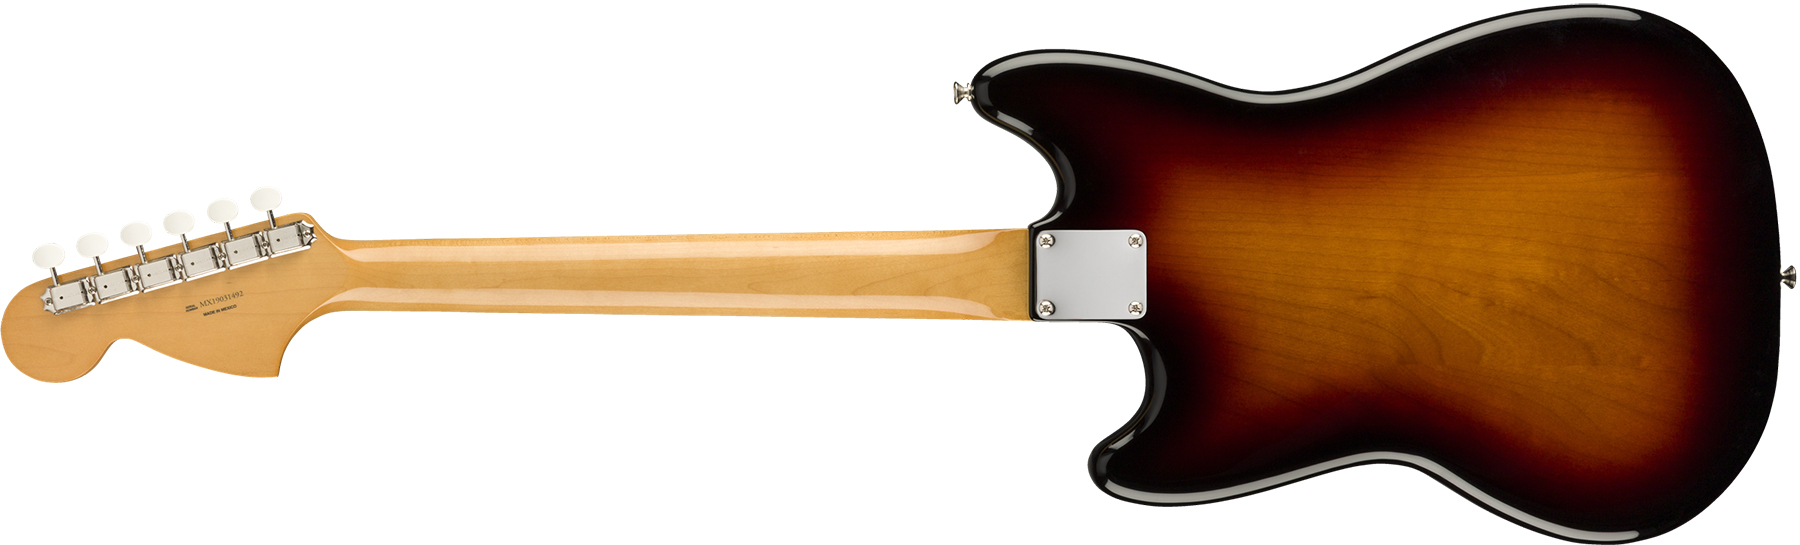 Fender Mustang 60s Vintera Vintage Mex Pf - 3-color Sunburst - Retro-Rock-E-Gitarre - Variation 1